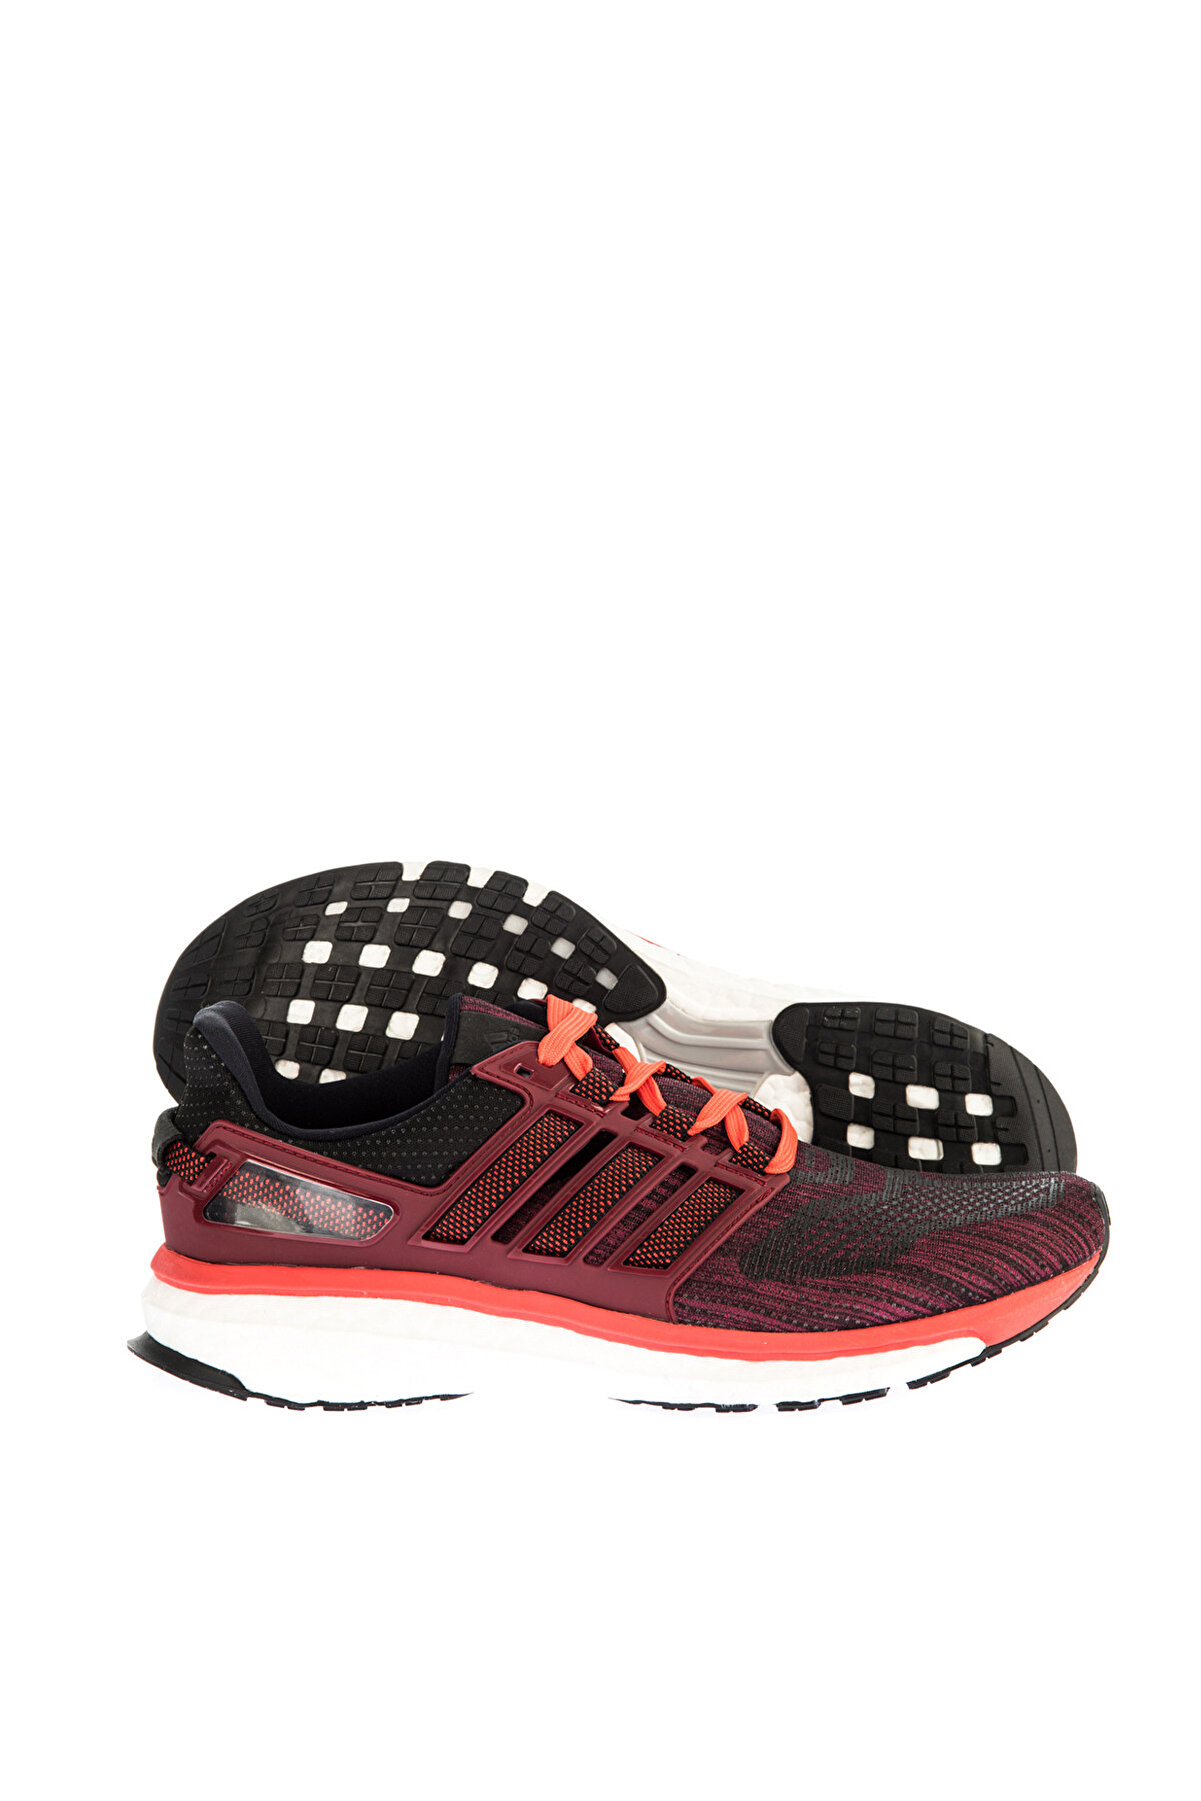 adidas Erkek Yürüyüş Ayakkabısı Energy Boost 3 M - BB5788